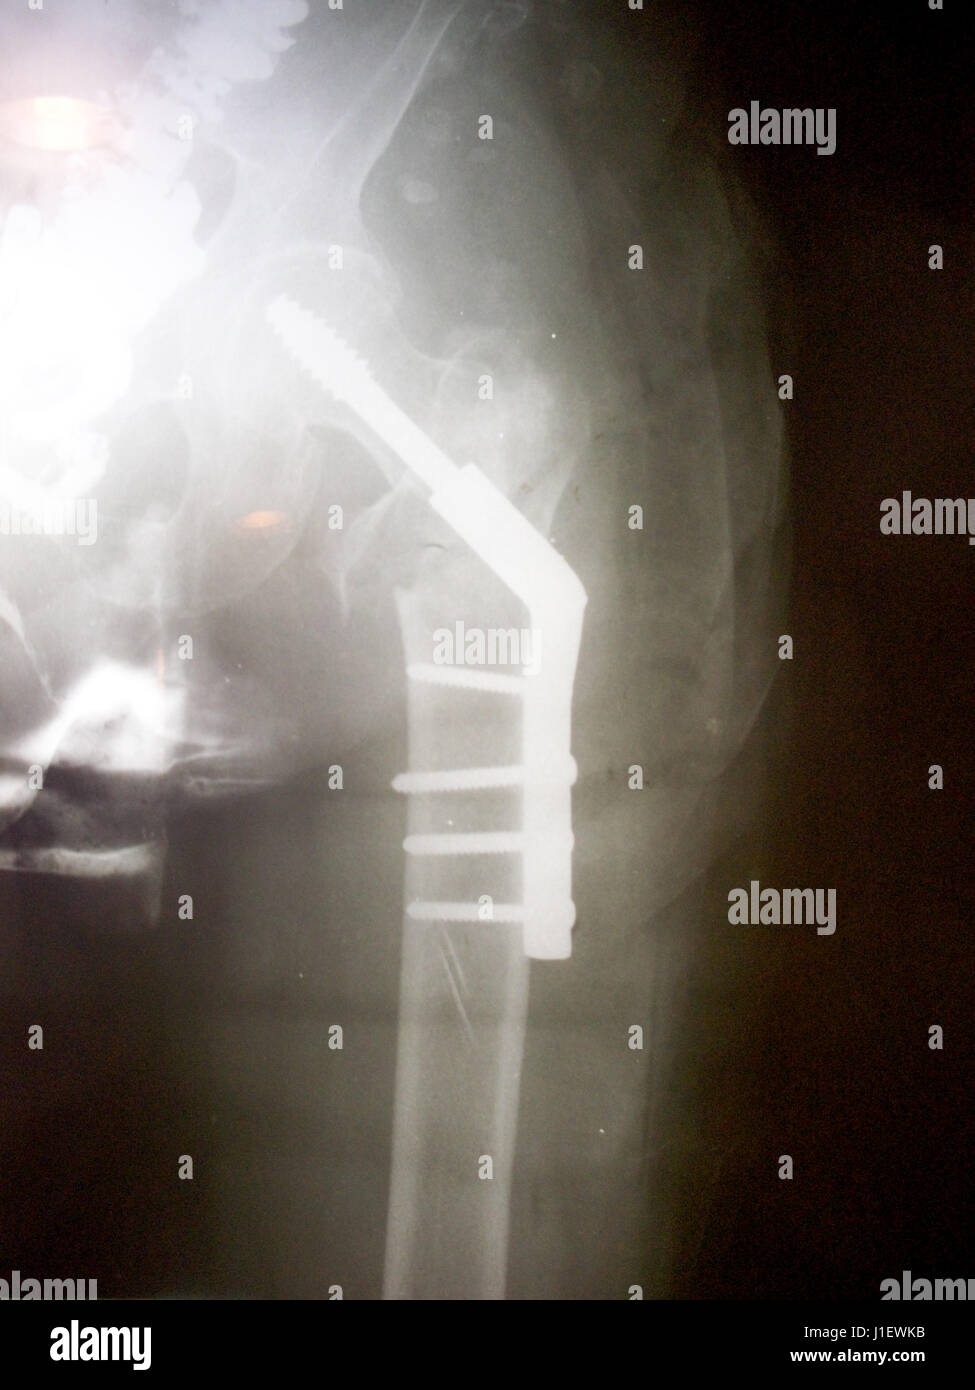 Immagine a raggi X del lato destro, anca umana la frattura del collo del femore osso. Riduzione aperta per la fissazione interna con osso interno asta a vite e da sovracorrente ortopedici Foto Stock